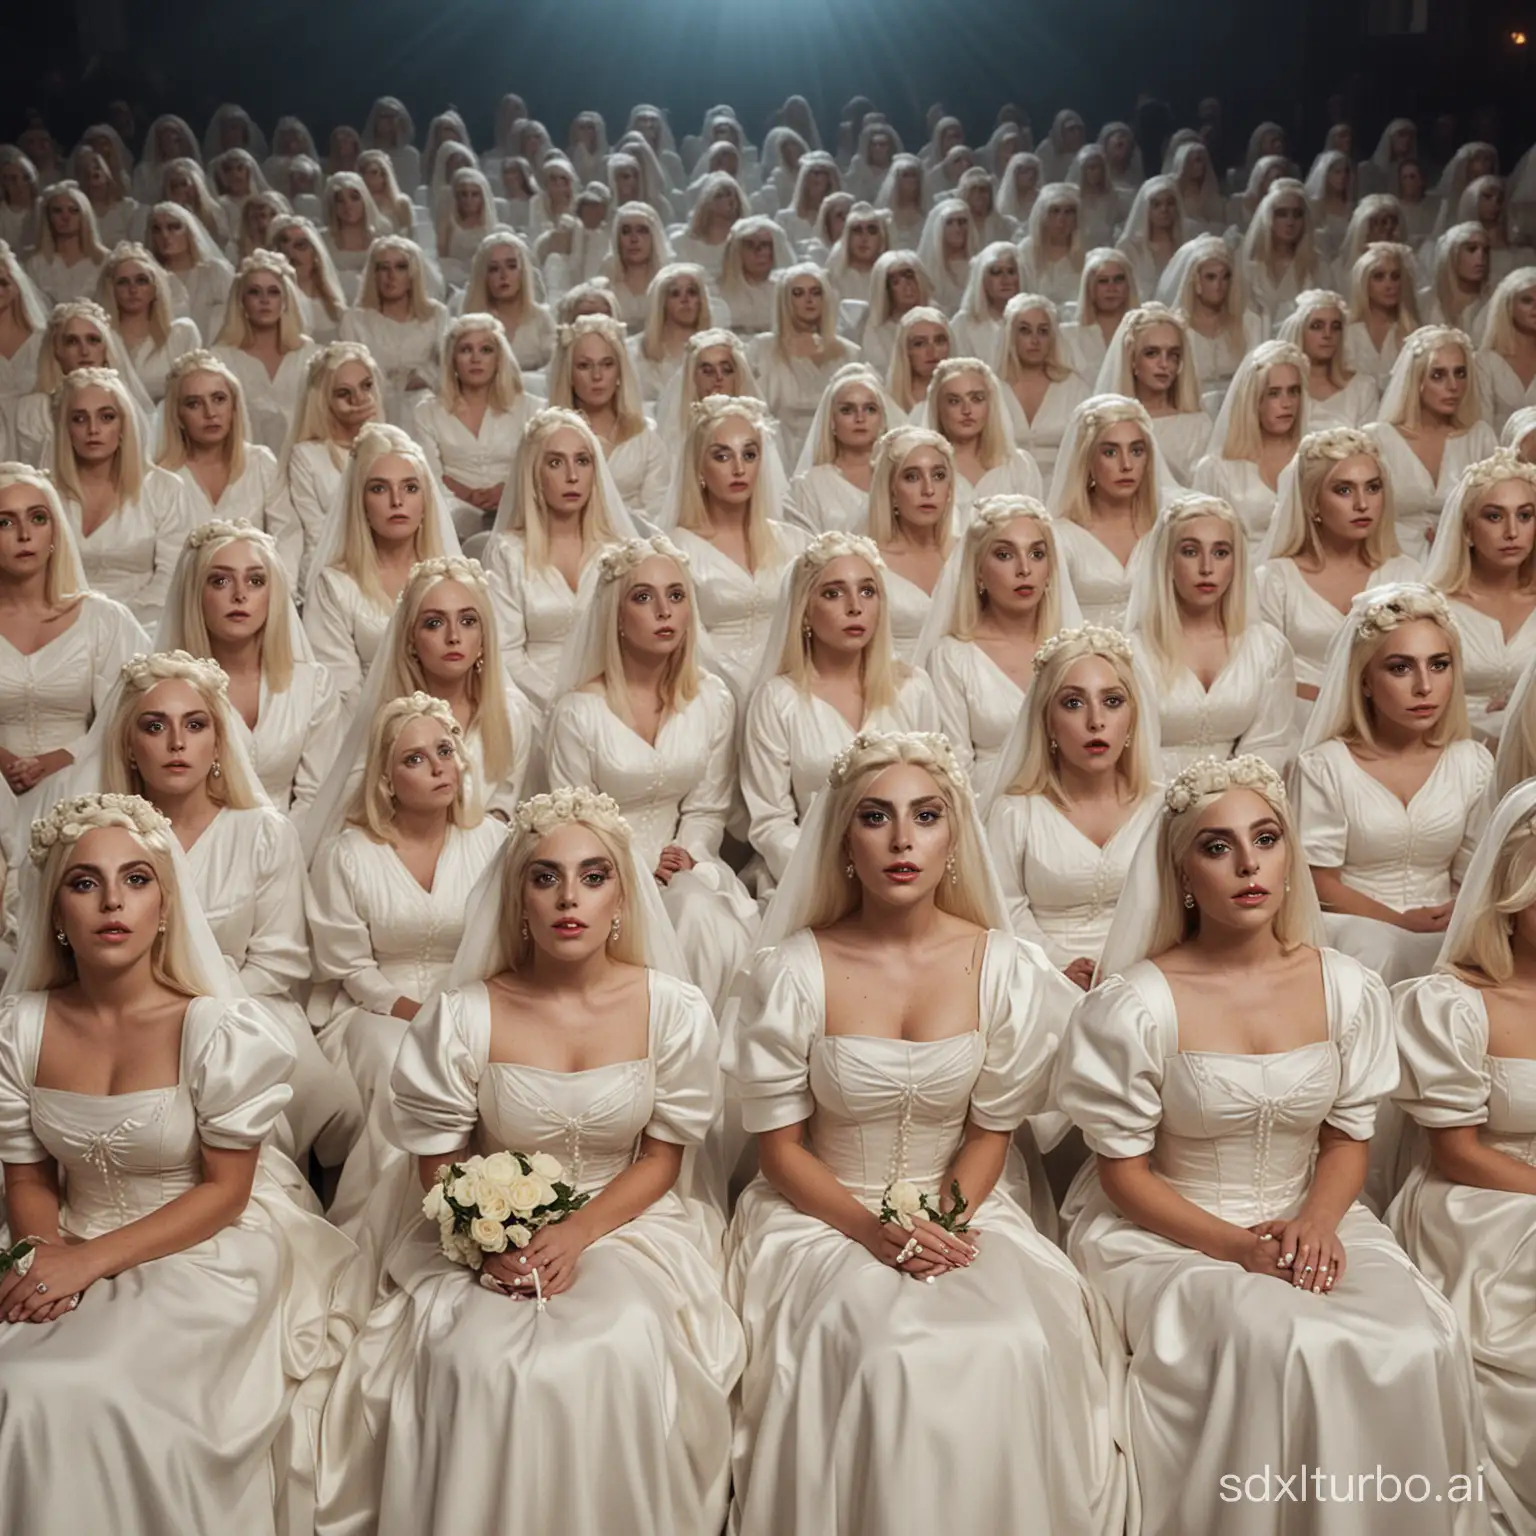 Lady-Gaga-Brides-Crowd-Enjoying-Cinema